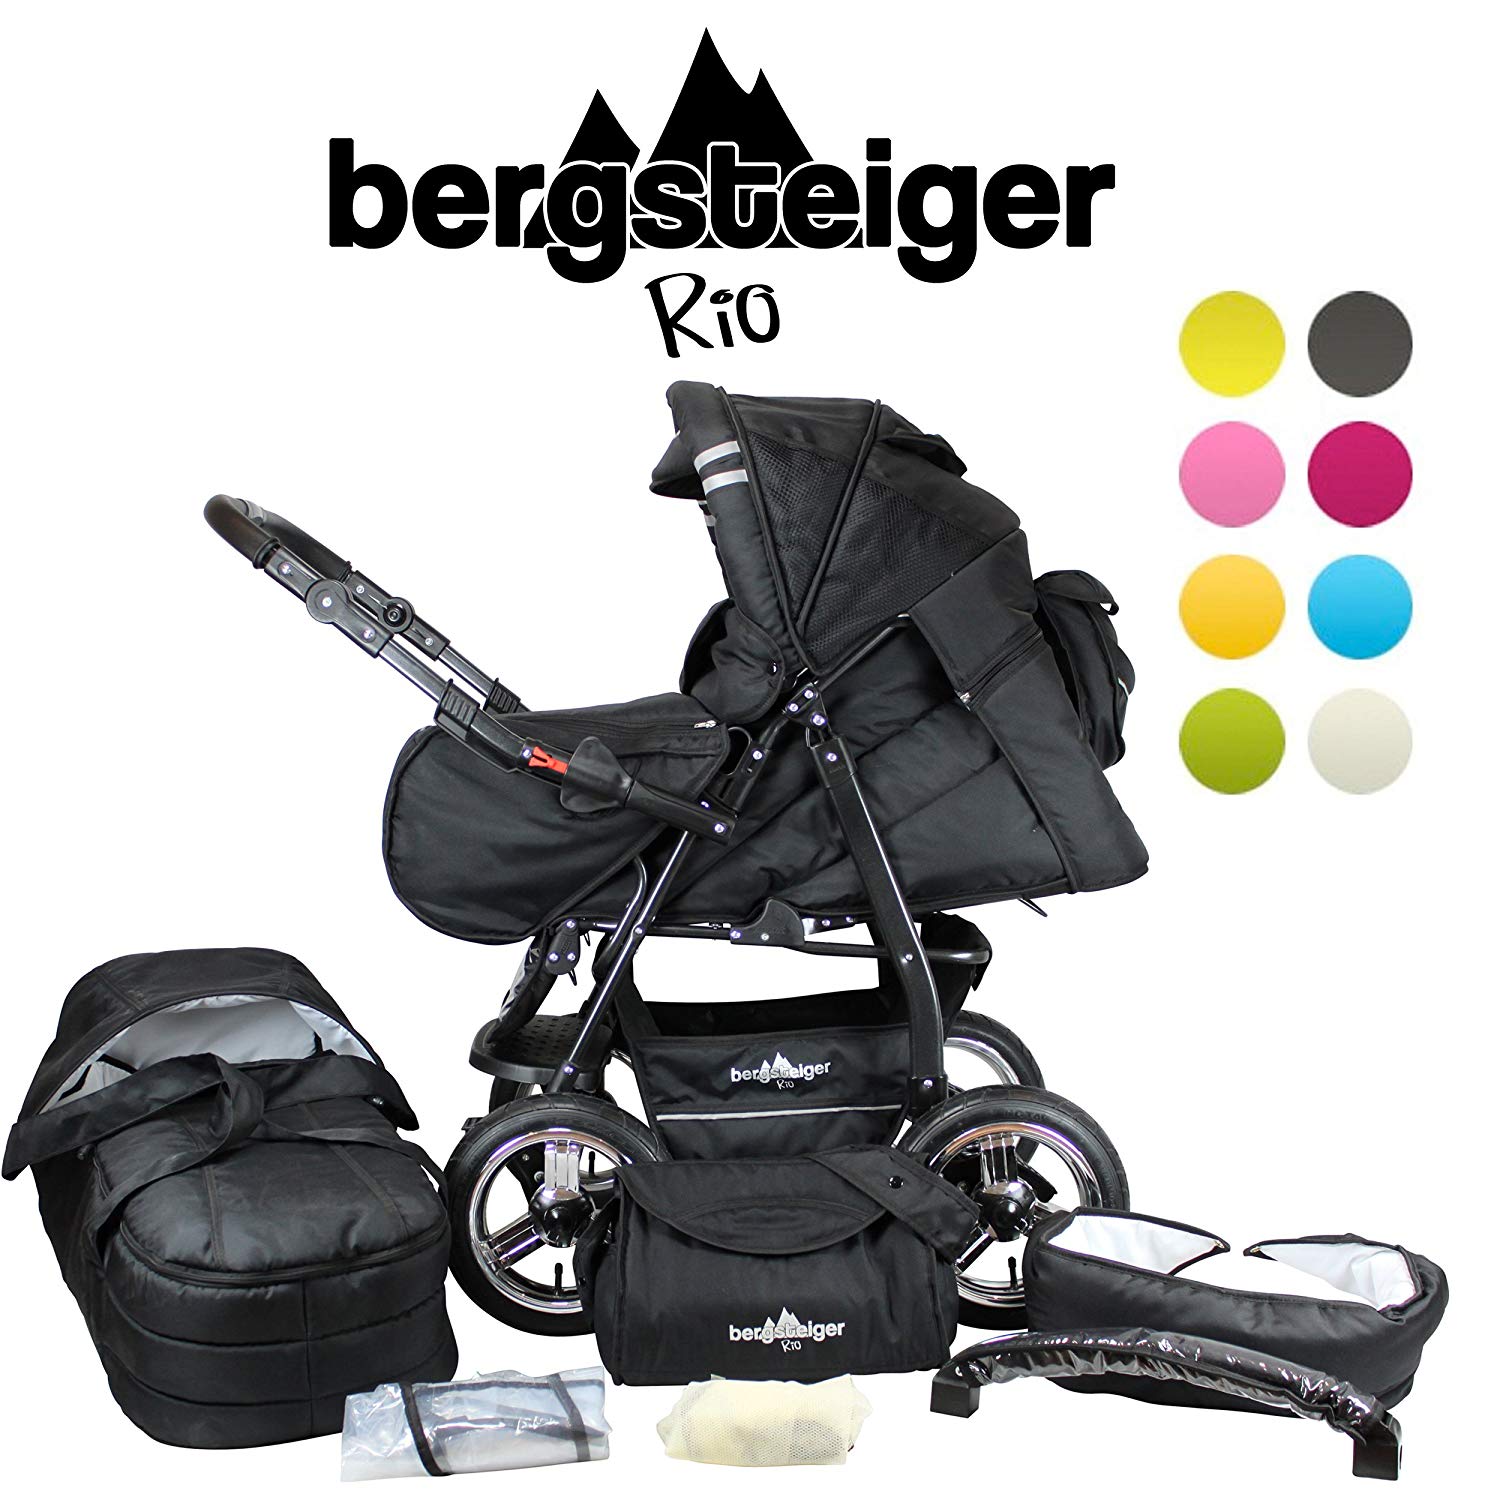 Bergsteiger Rio Combi Pushchair + Soft Carry Bag + Changing Bag (10 Pieces) Colour: Grey & Red Stripes